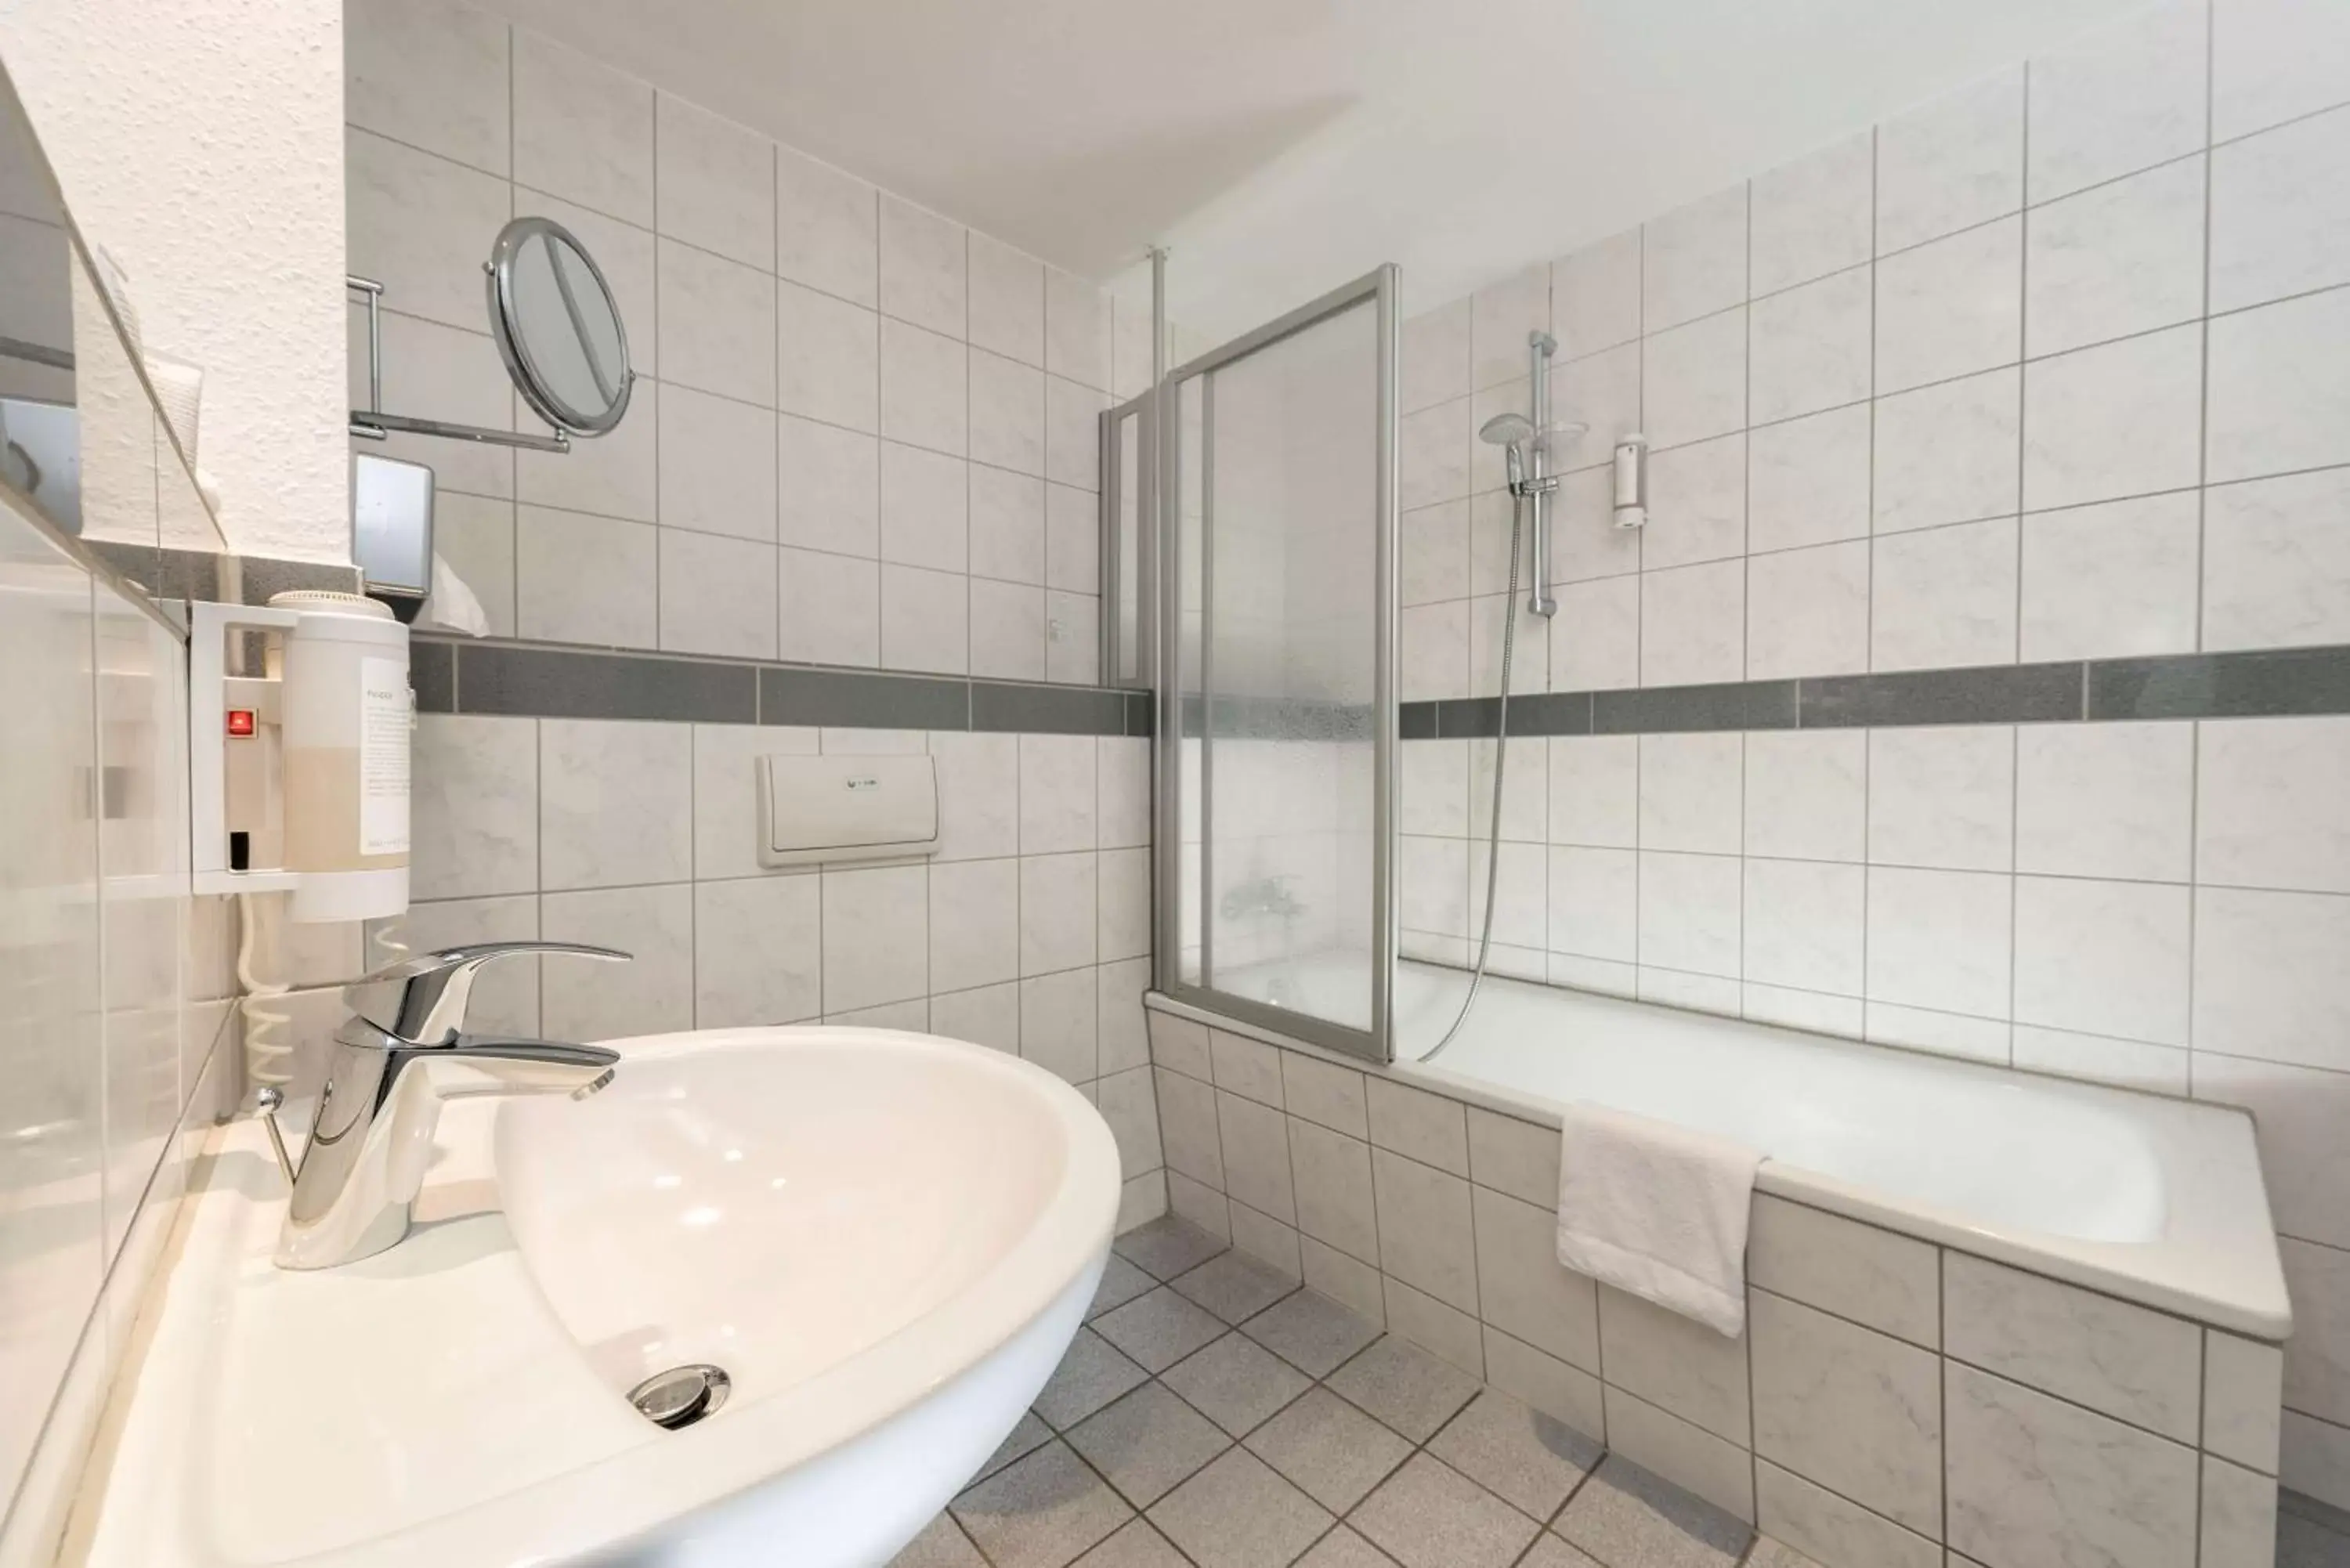 Bathroom in Best Western Hotel Dortmund Airport